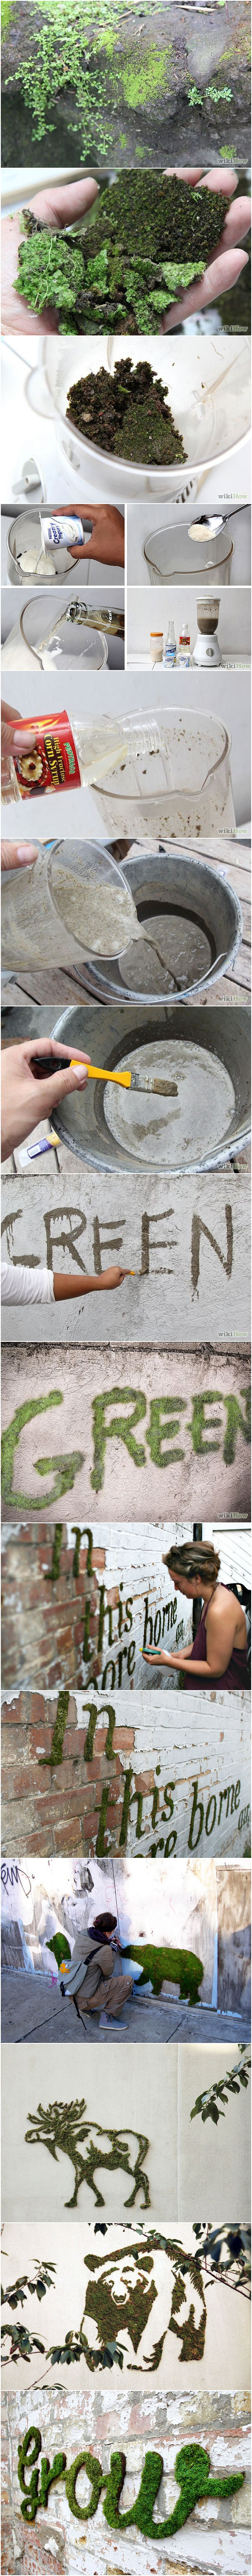 一种新的街头涂鸦方式| jiaren.org